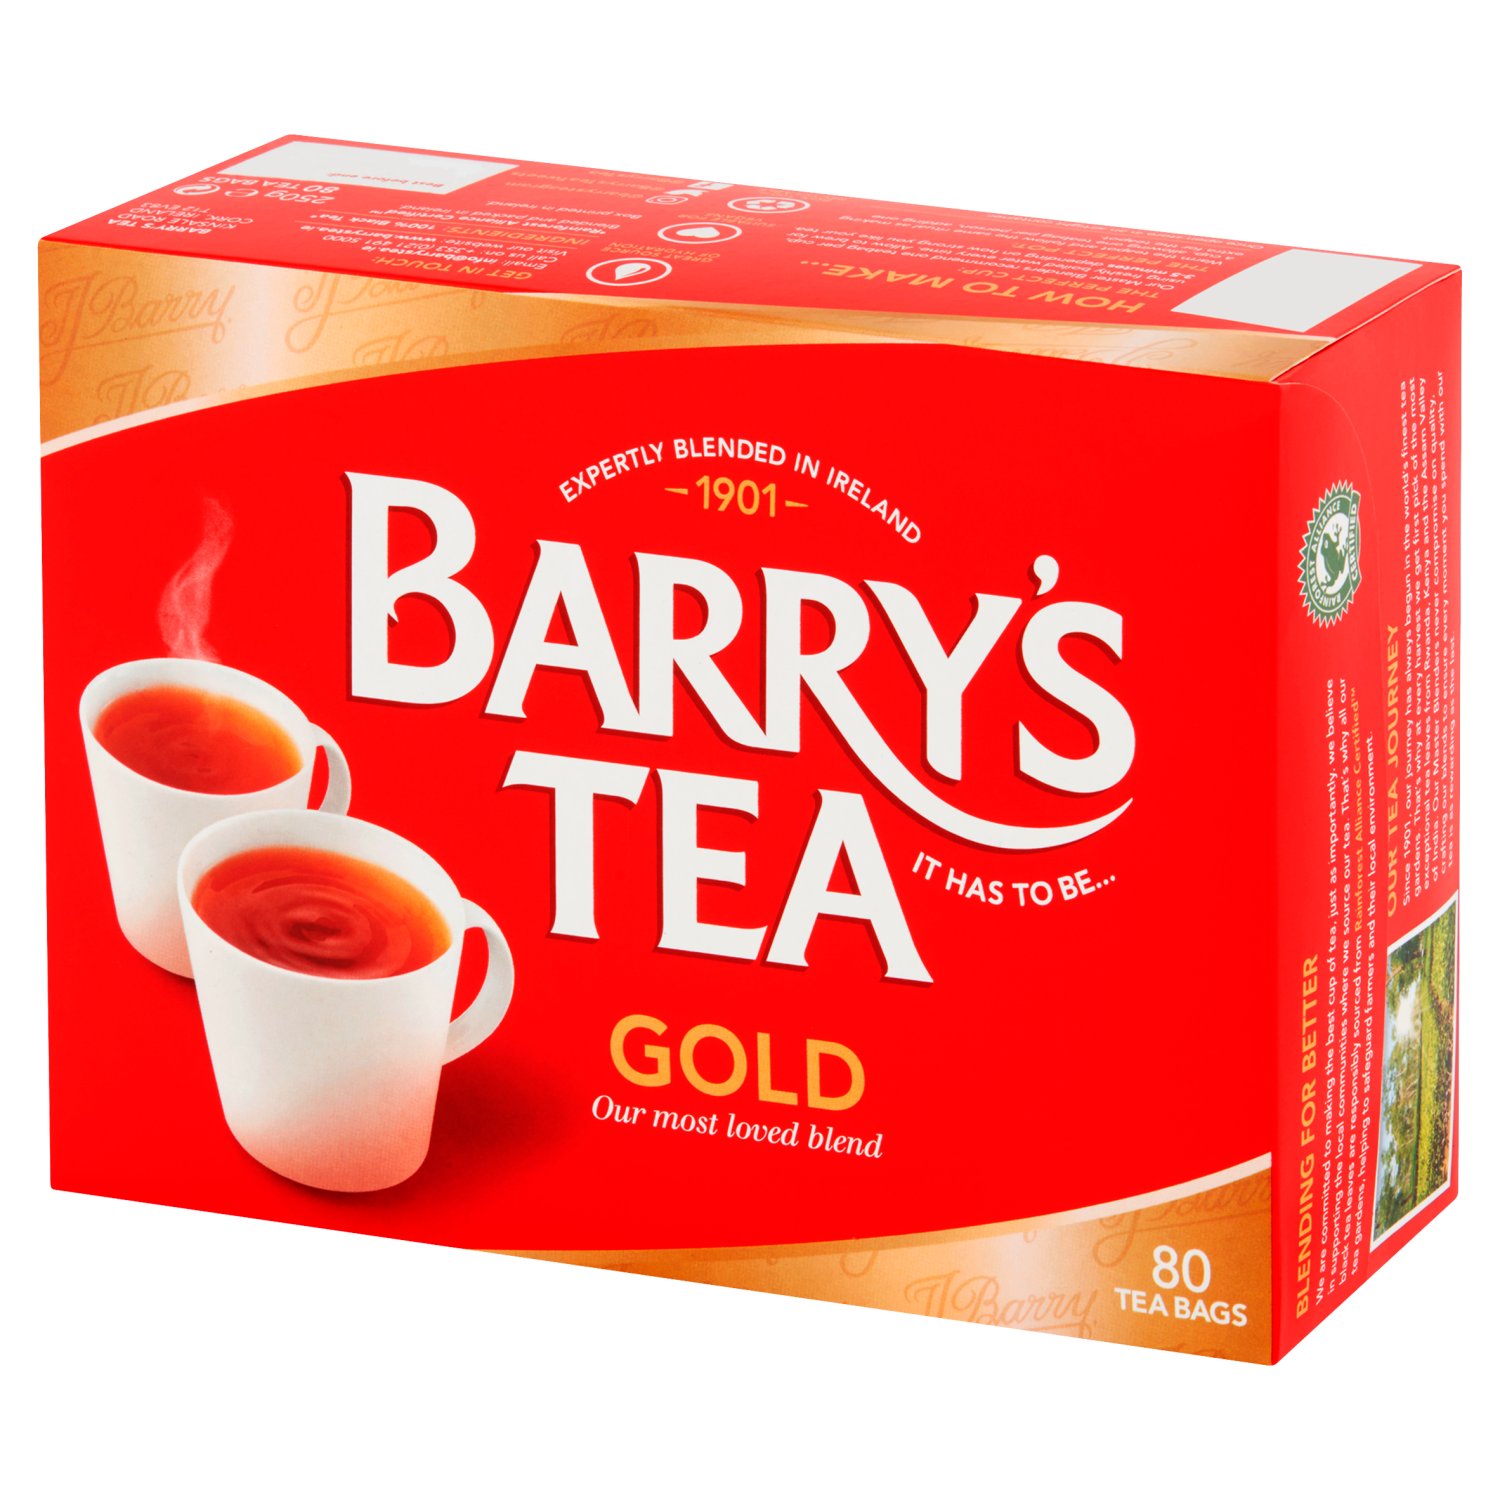 Barry's Gold Blend Tea 80 Pack (250 g)